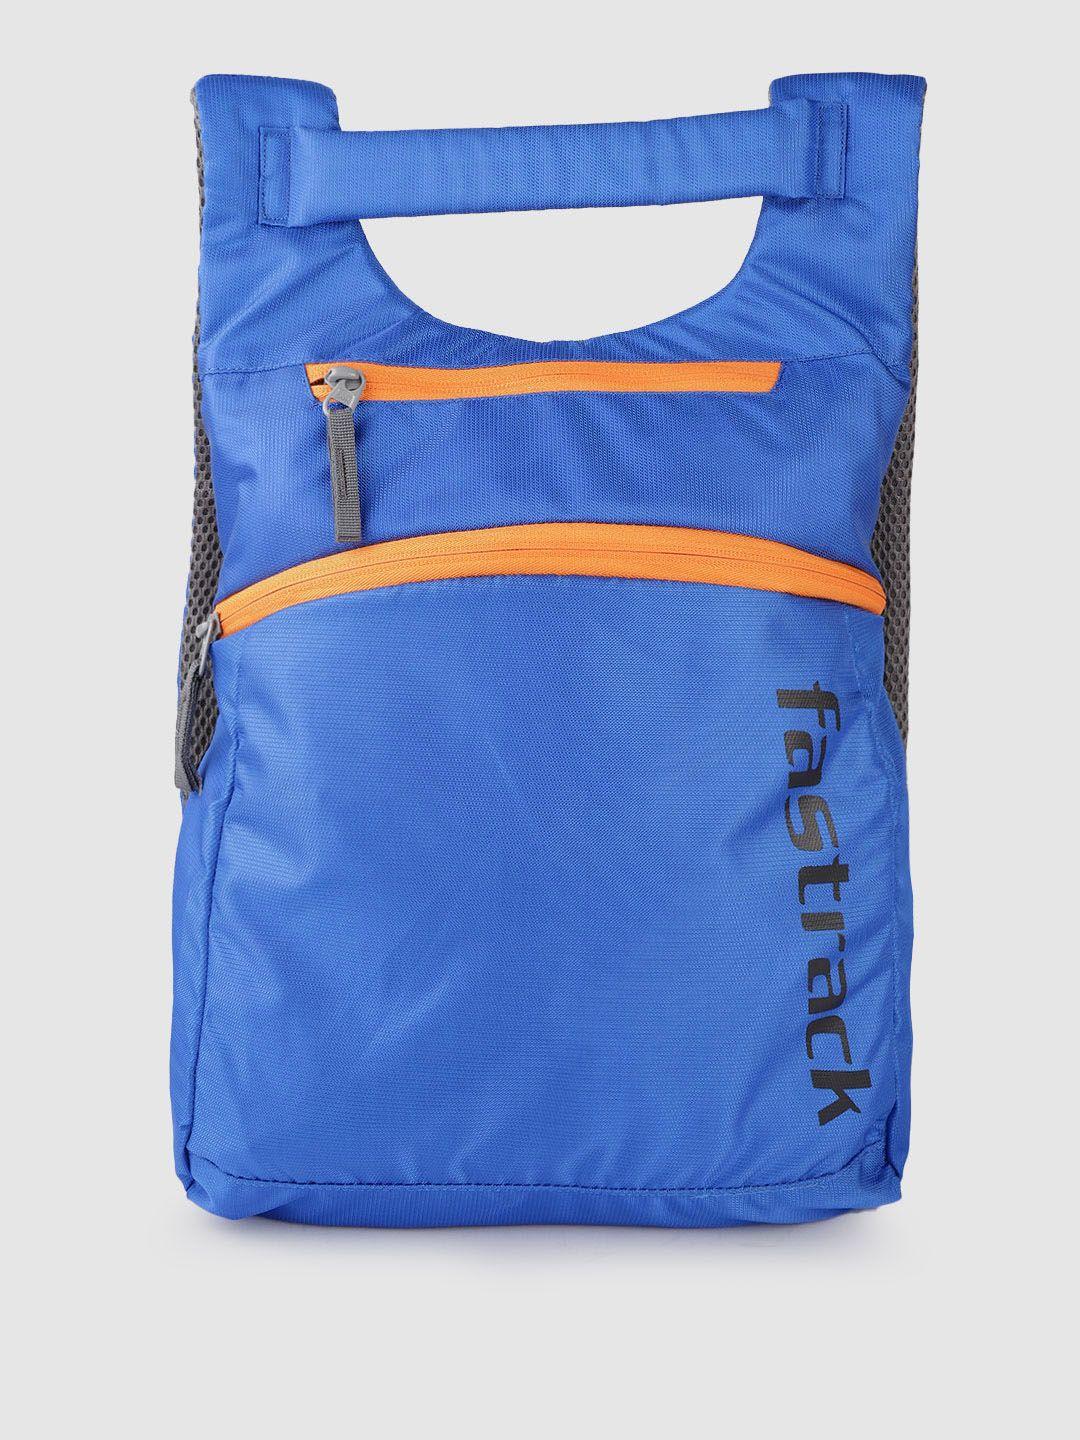 fastrack women backpack